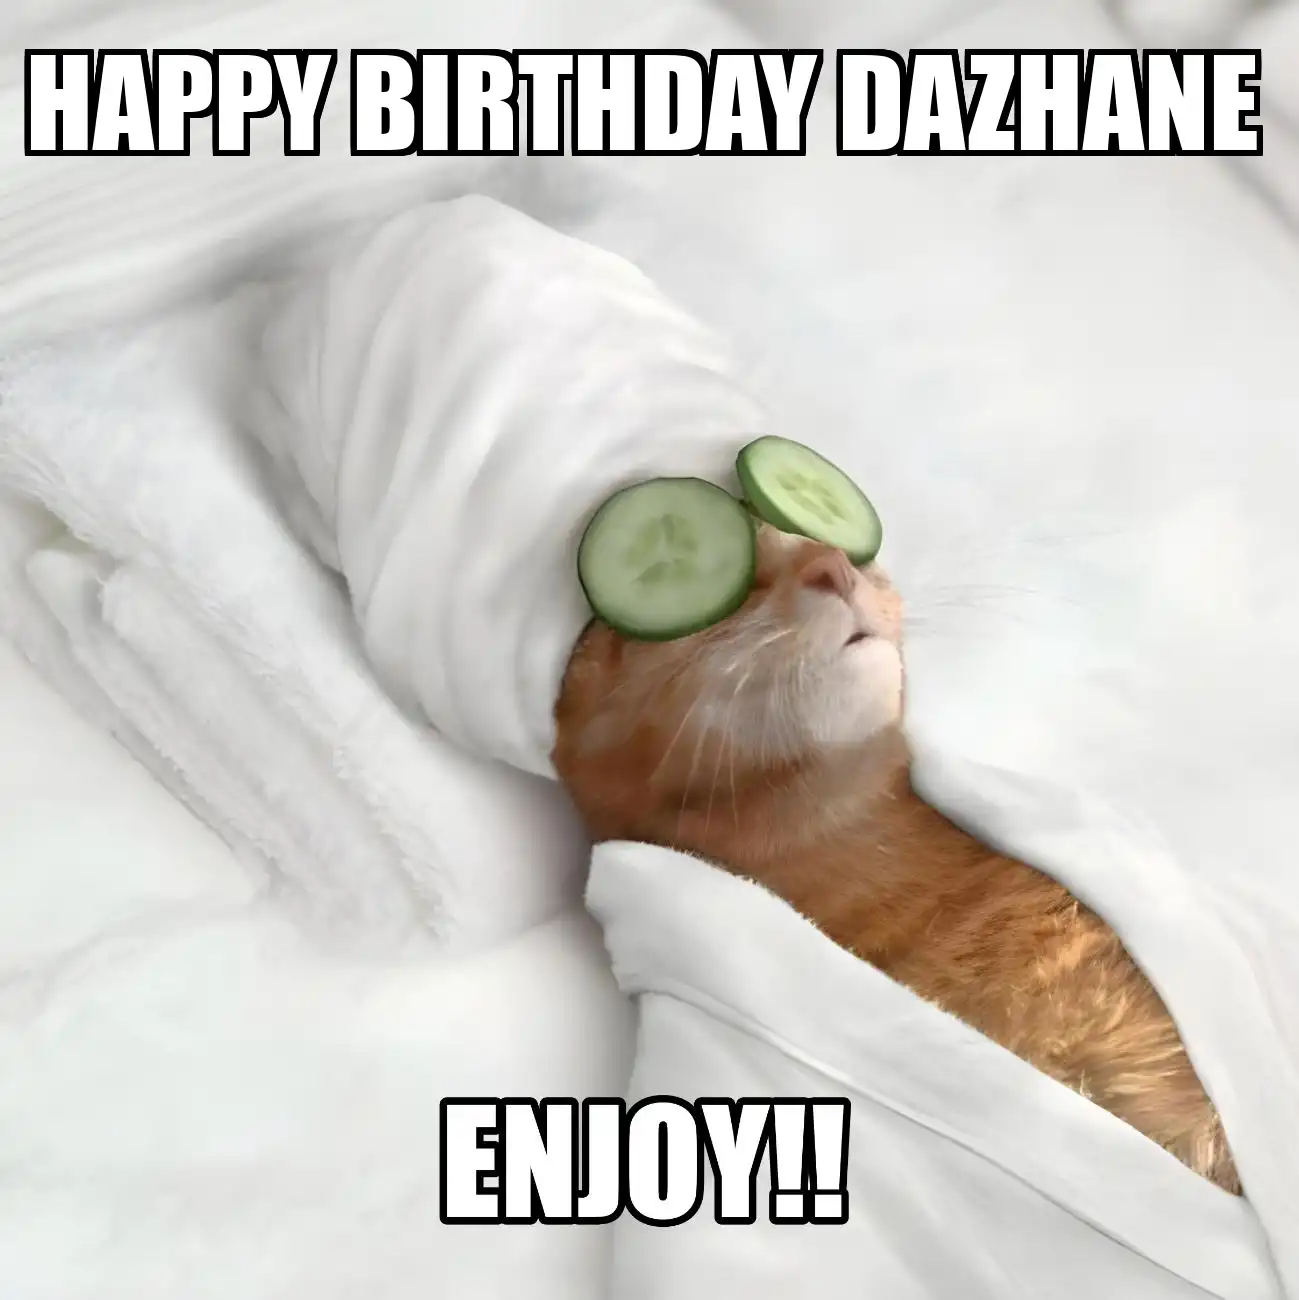 Happy Birthday Dazhane Enjoy Cat Meme